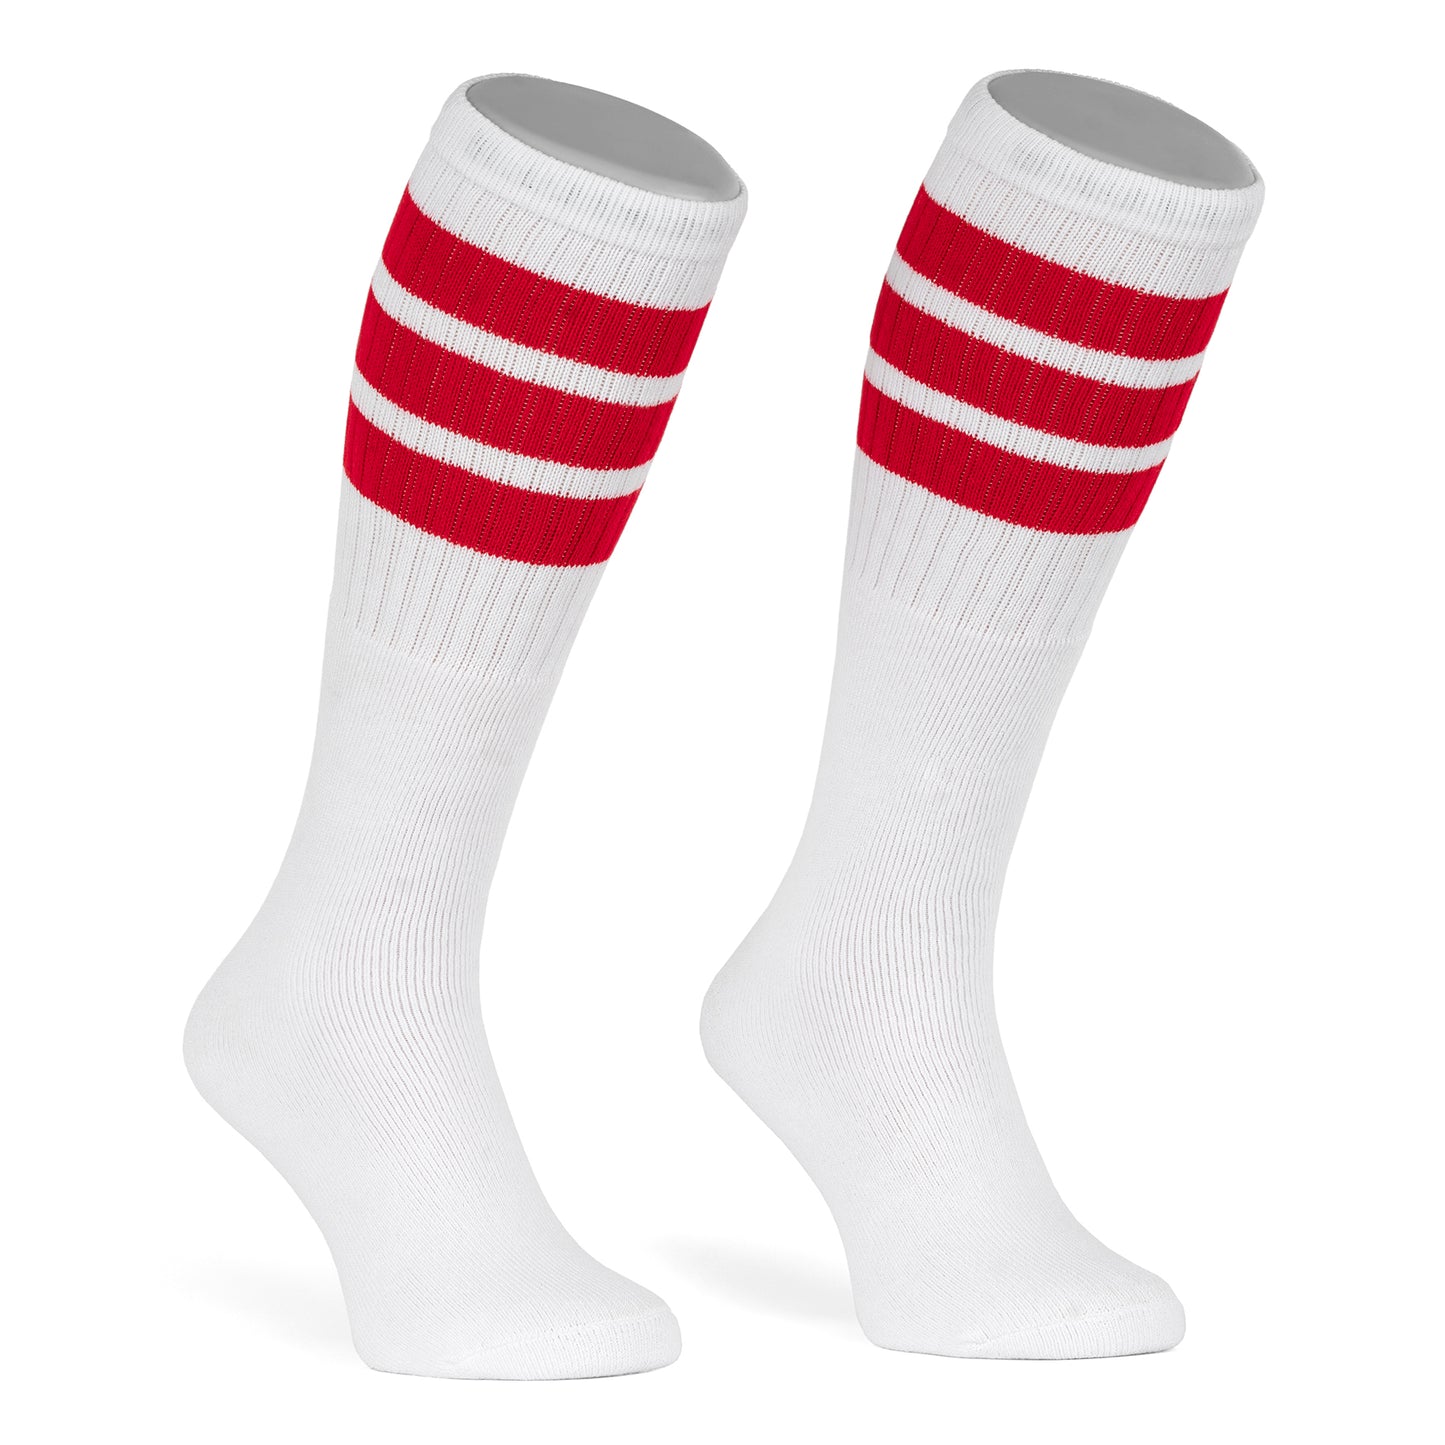 Skatersocks 22 Inch Knee High Tube Socks white - royal blue red striped